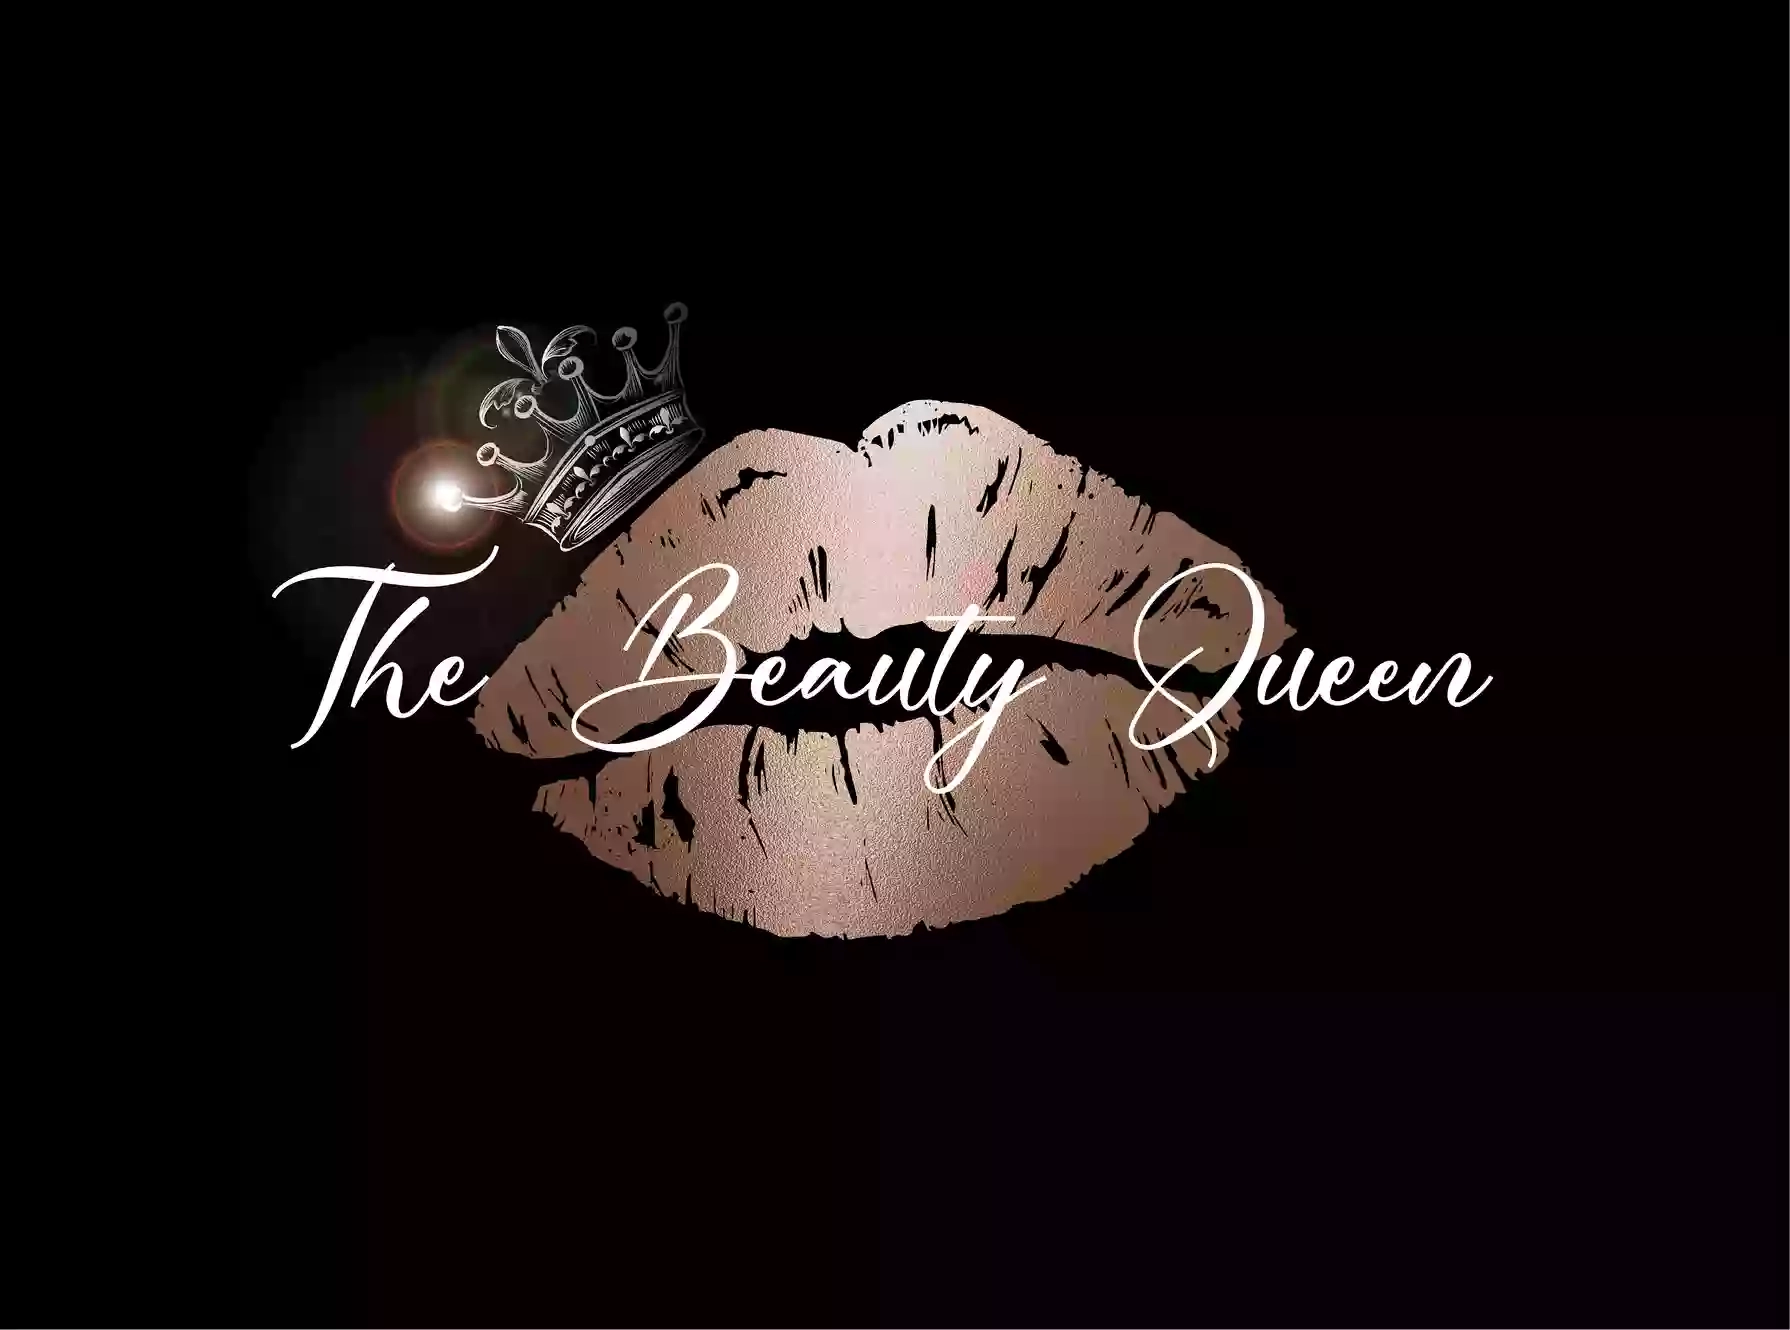 The Beauty Queen